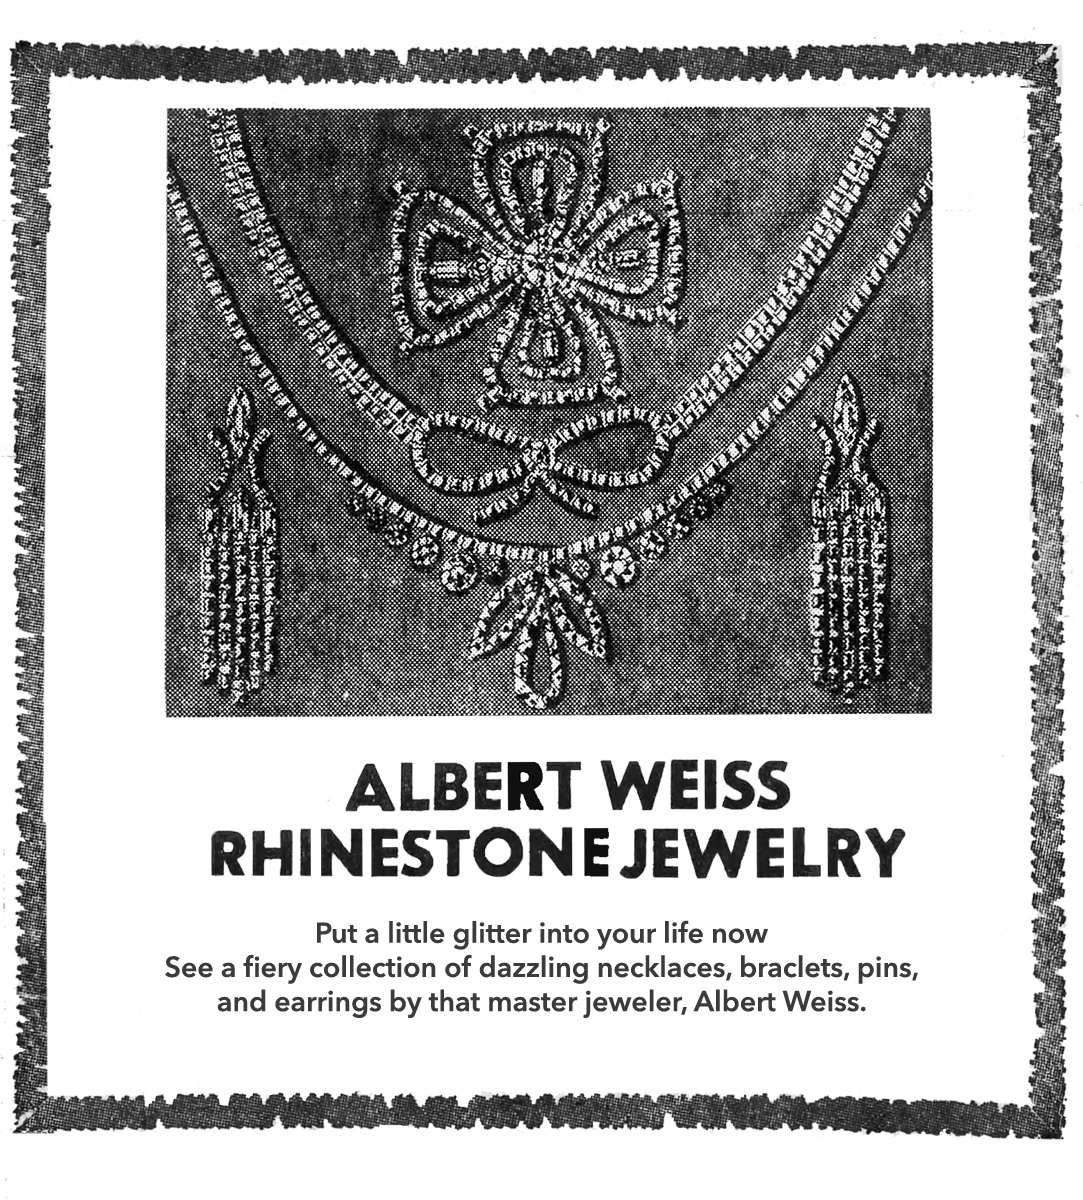 Weiss rhinestone jewelry 1972